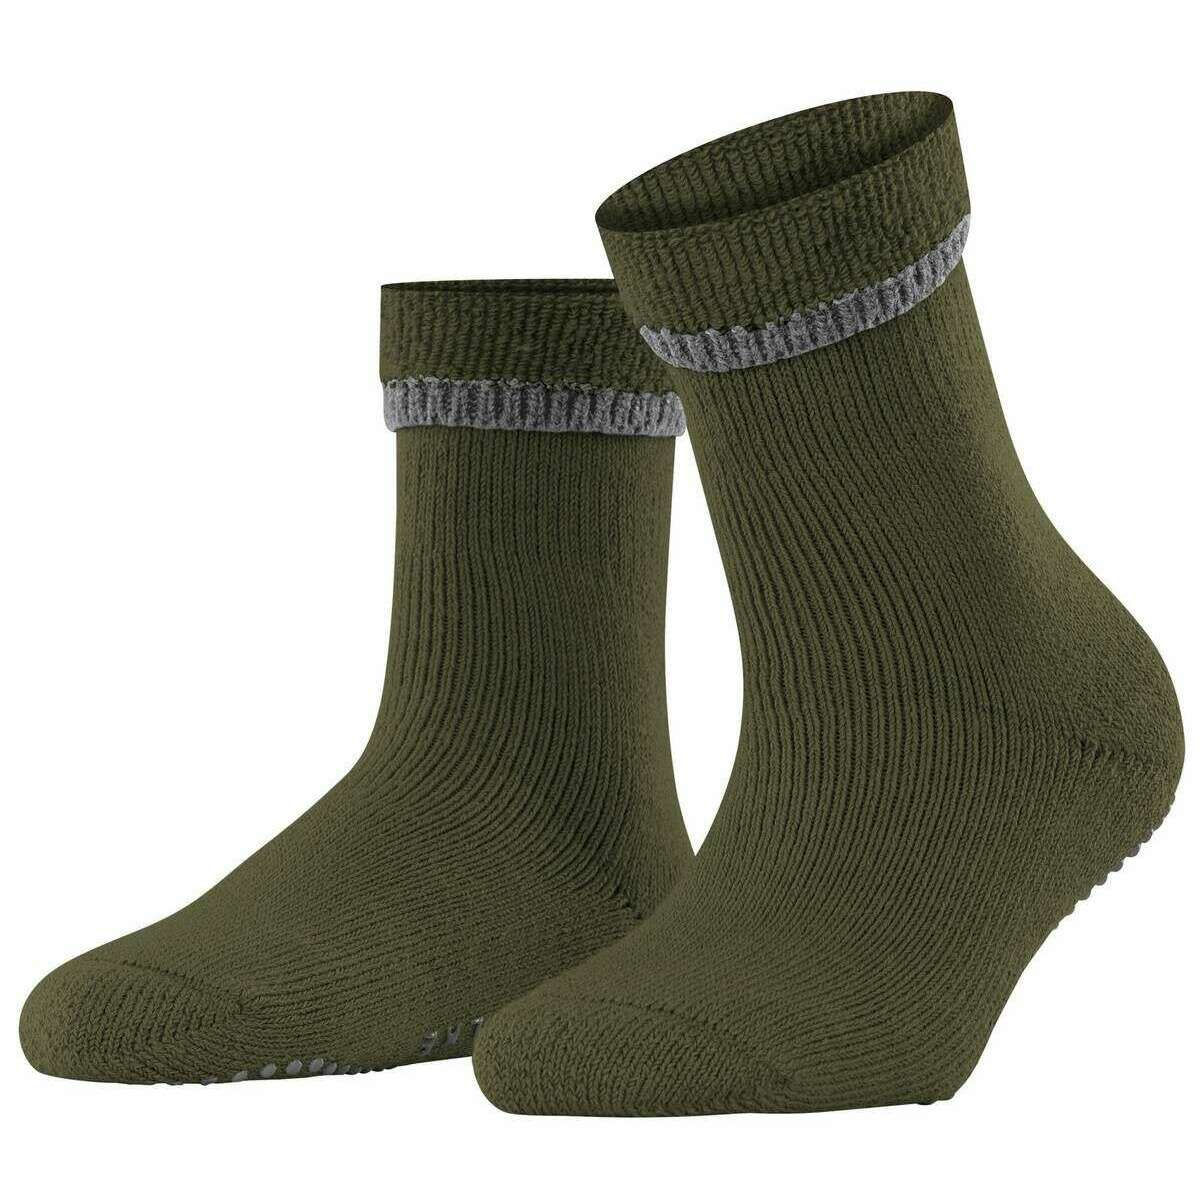 Falke Cuddle Pads House Socks - Artichoke Green